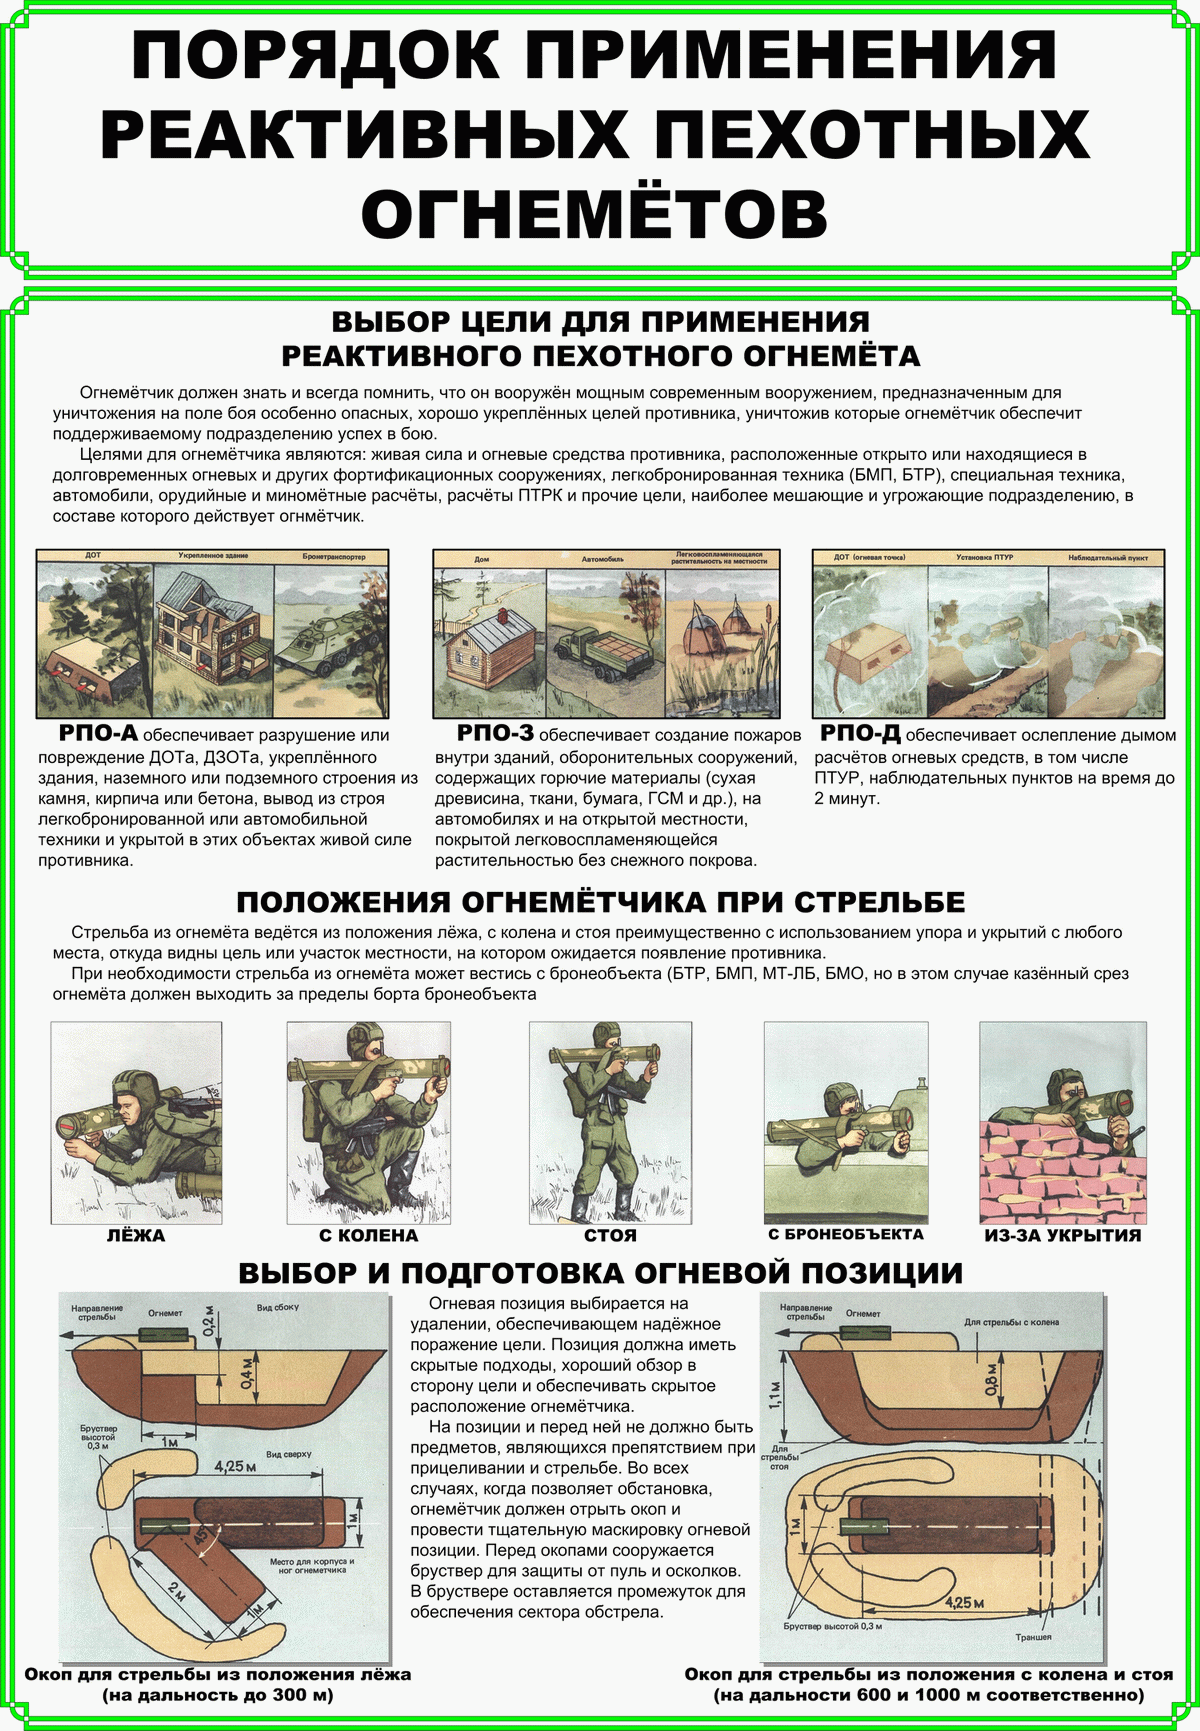 Порядок применения реактивных пехотных огнеметов (выбор цели, положения при стрельбе, выбор и подготовка огневых позиций)